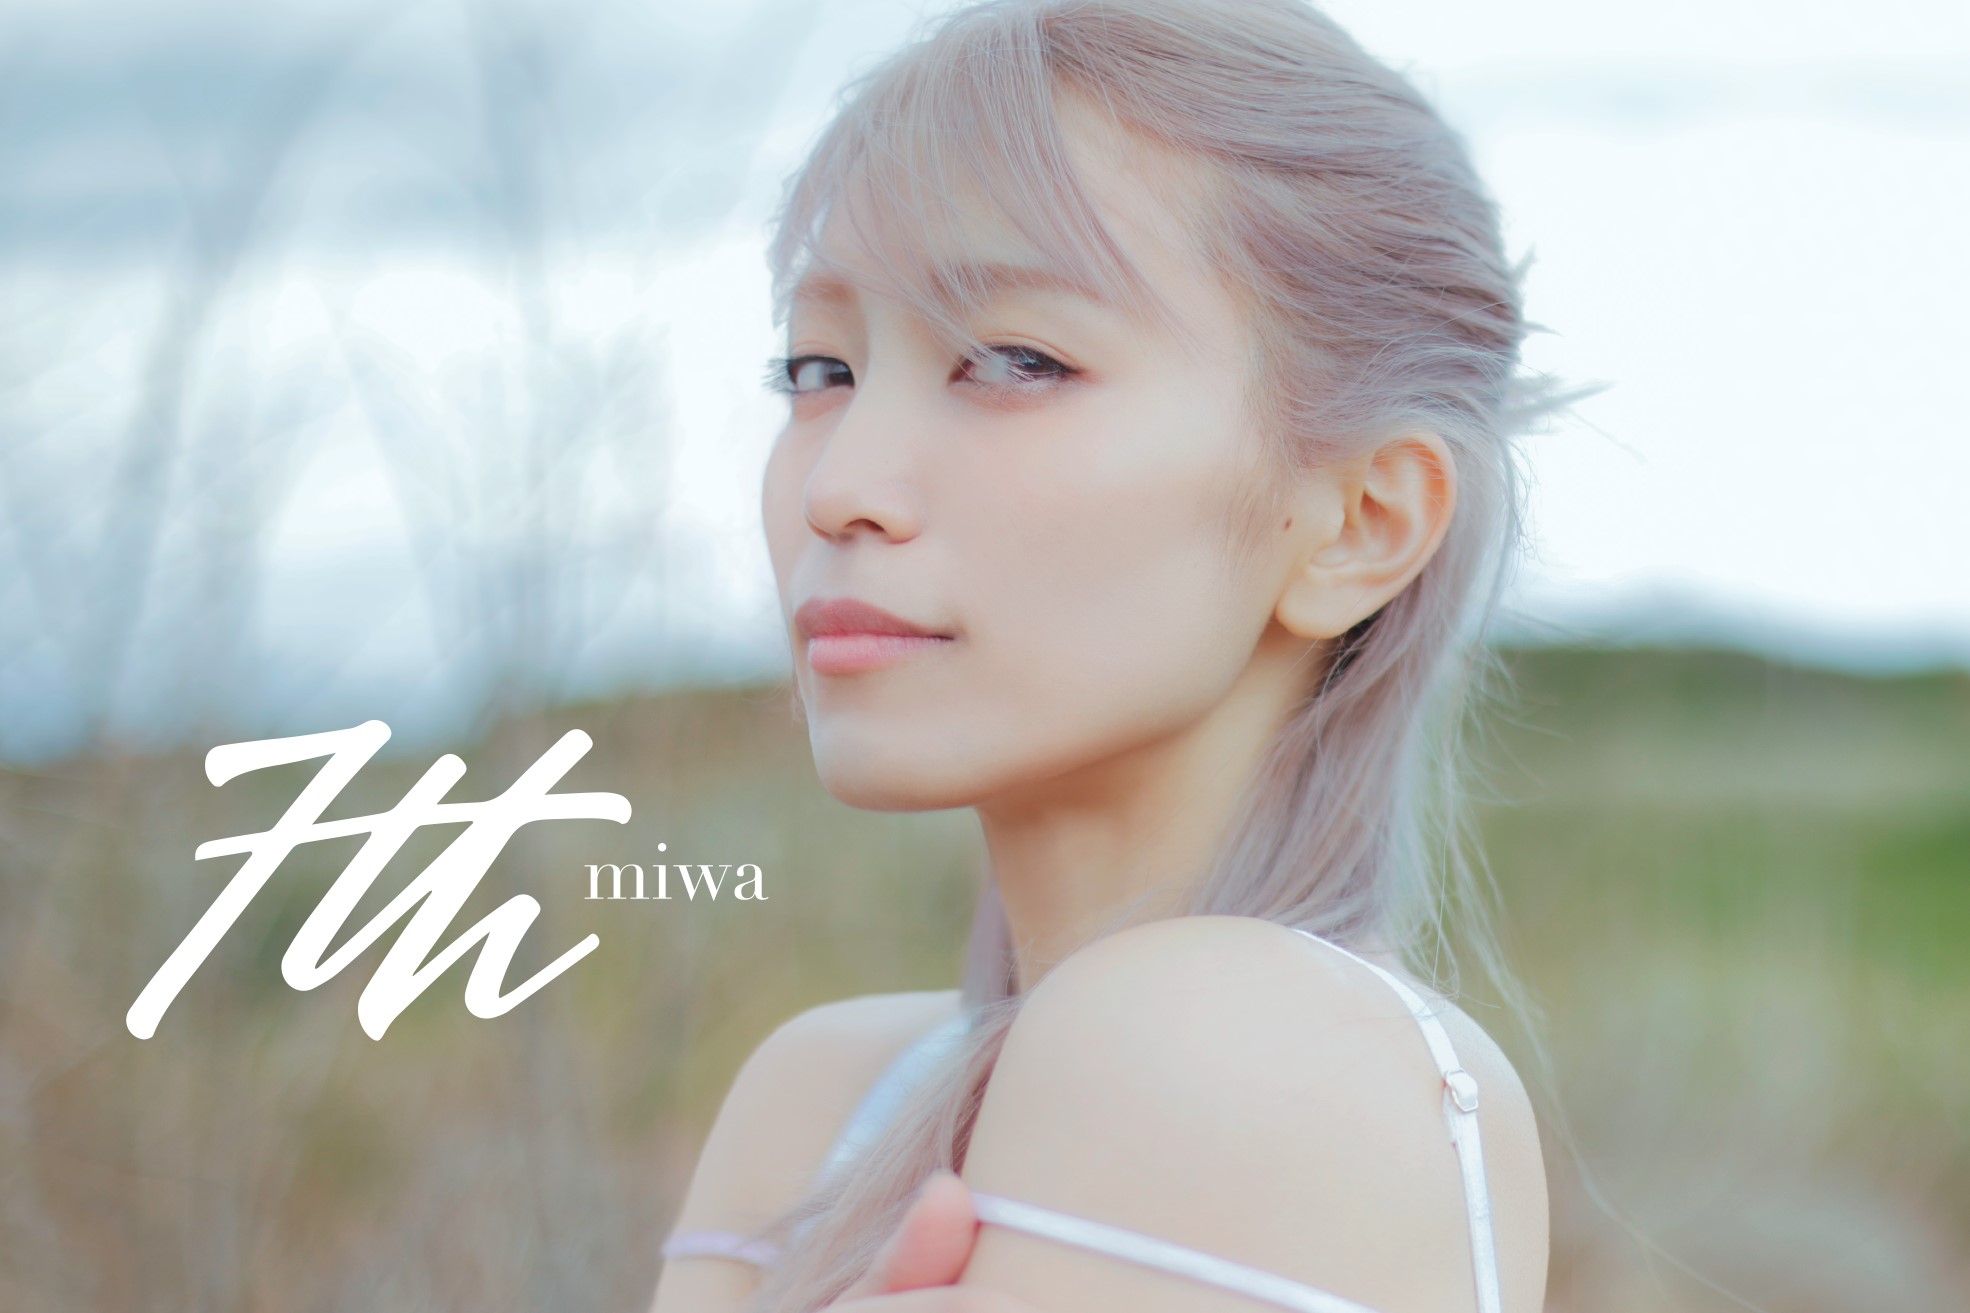 miwa、5月29日(水)リリースのニューアルバム「7th」ジャケット写真を公開！miwa史上、最も明るい髪色にイメージチェンジ！miwaの7枚目となるオリジナ